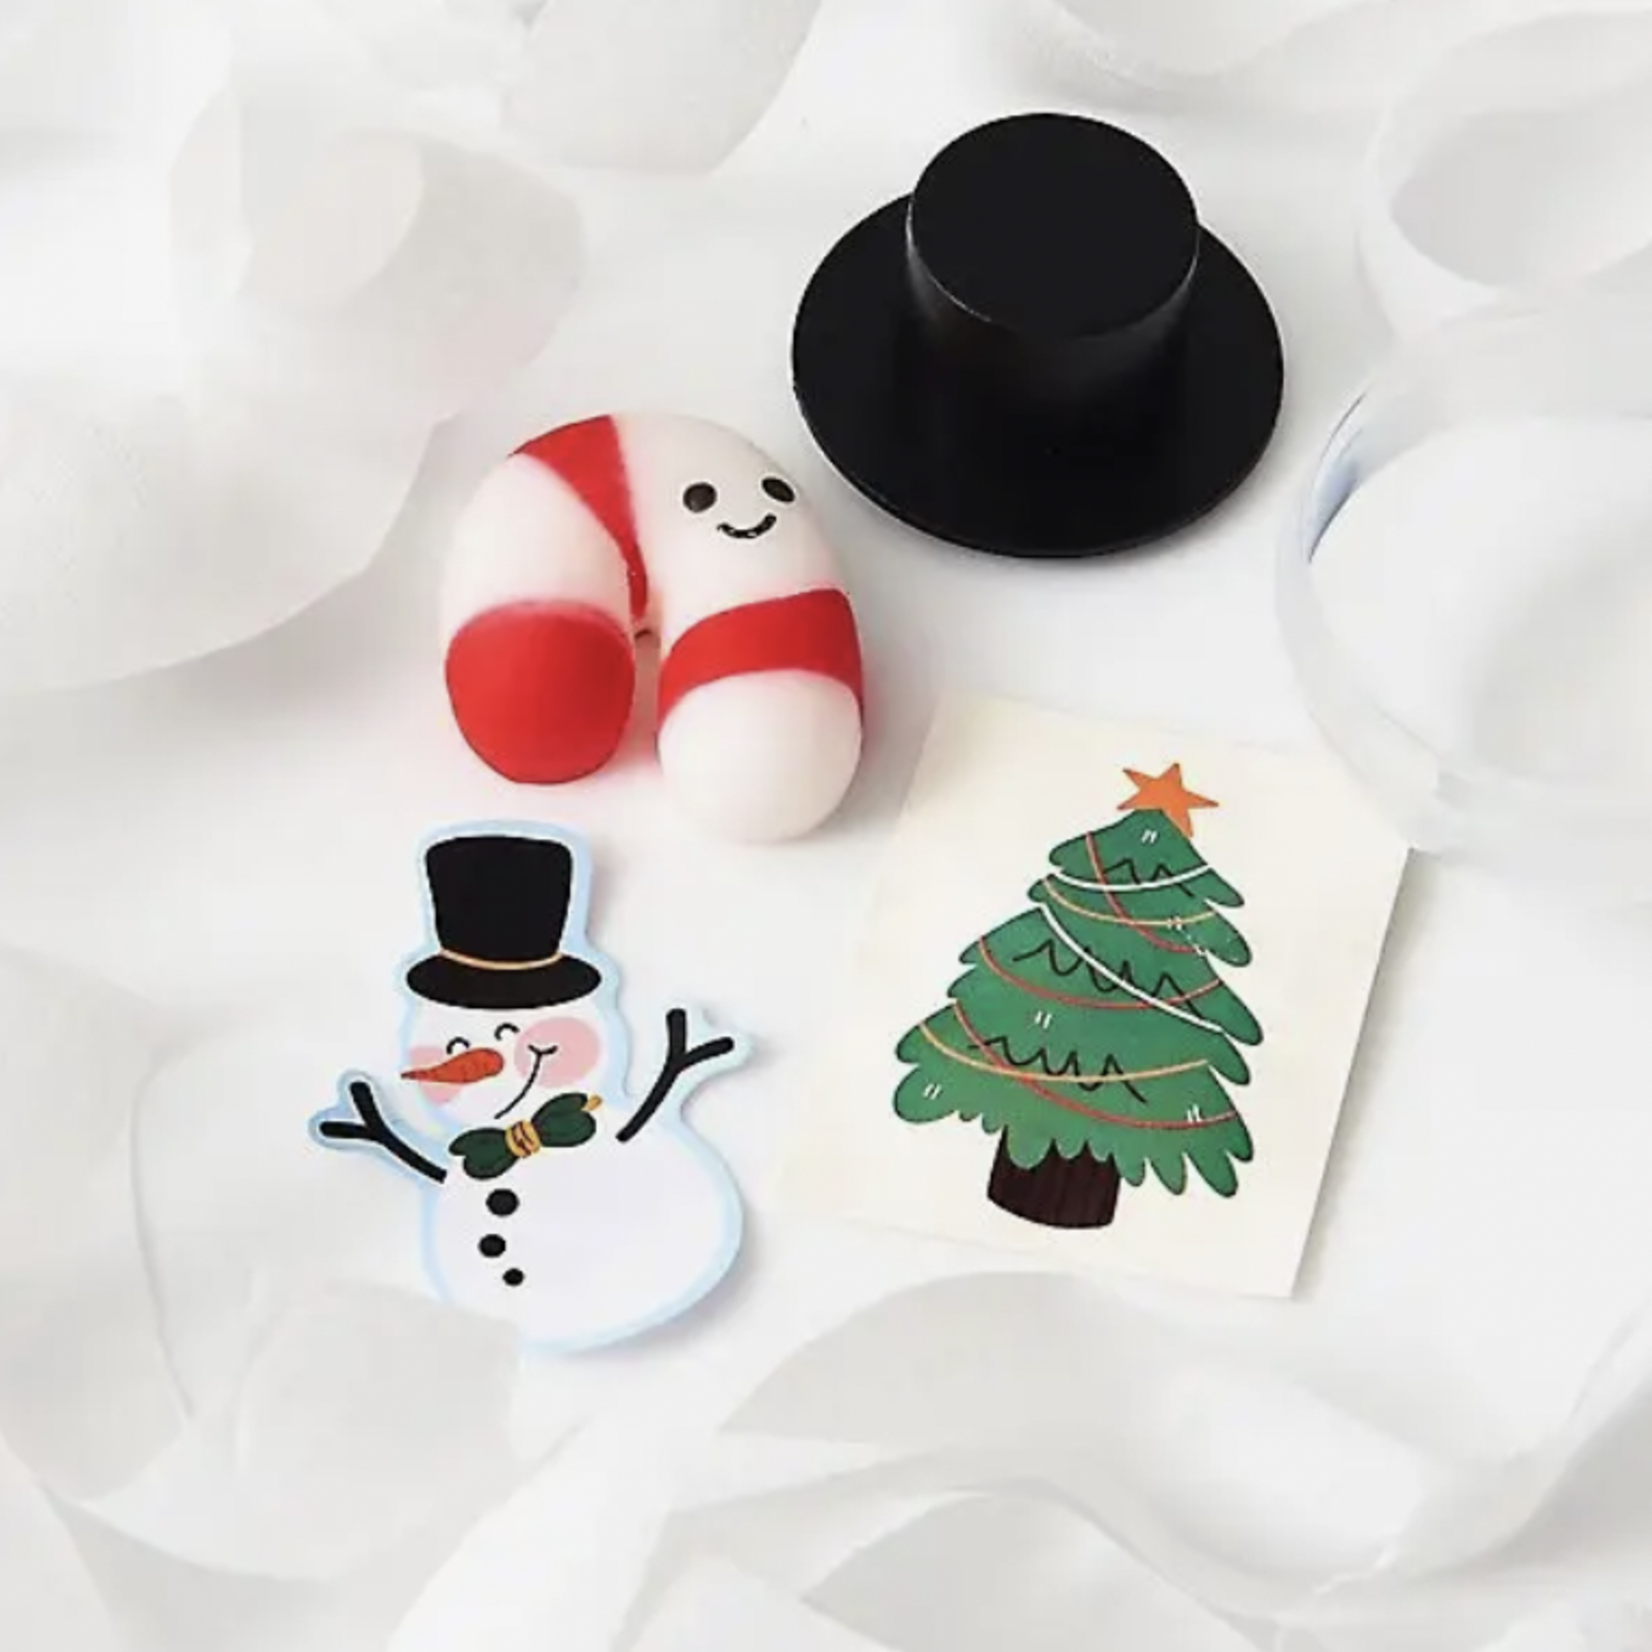 Paper Source Wholesale Snowman Surprise Balls - Set of 4